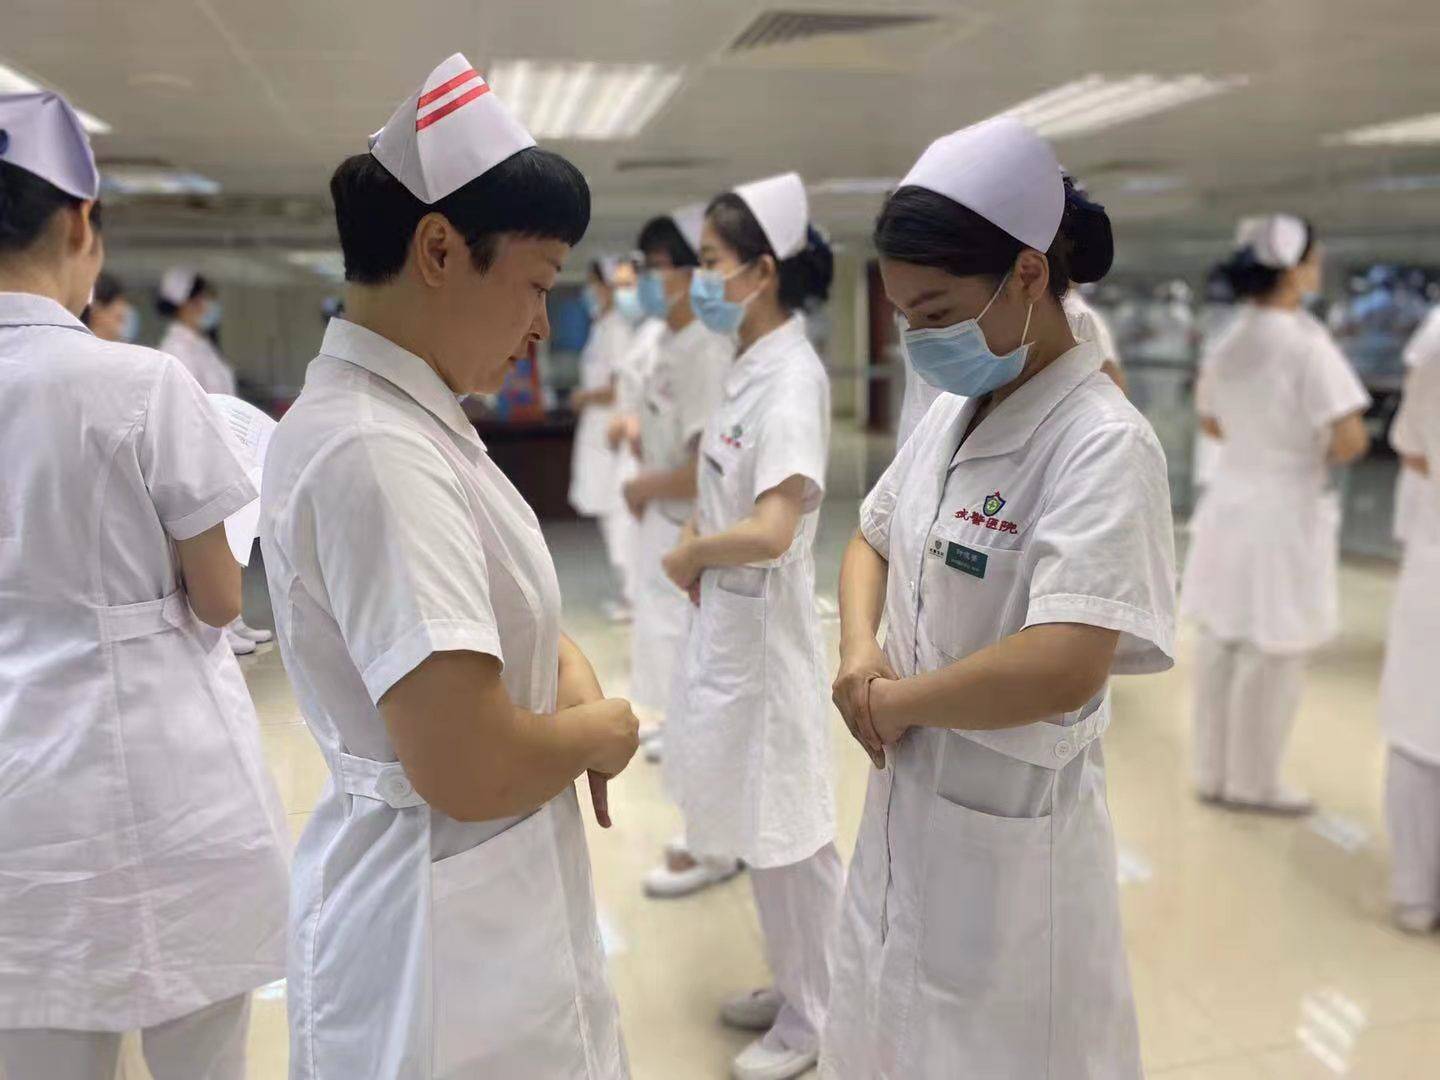 武警广东省总队医院集中开展护理礼仪培训,树立护理人员良好形象